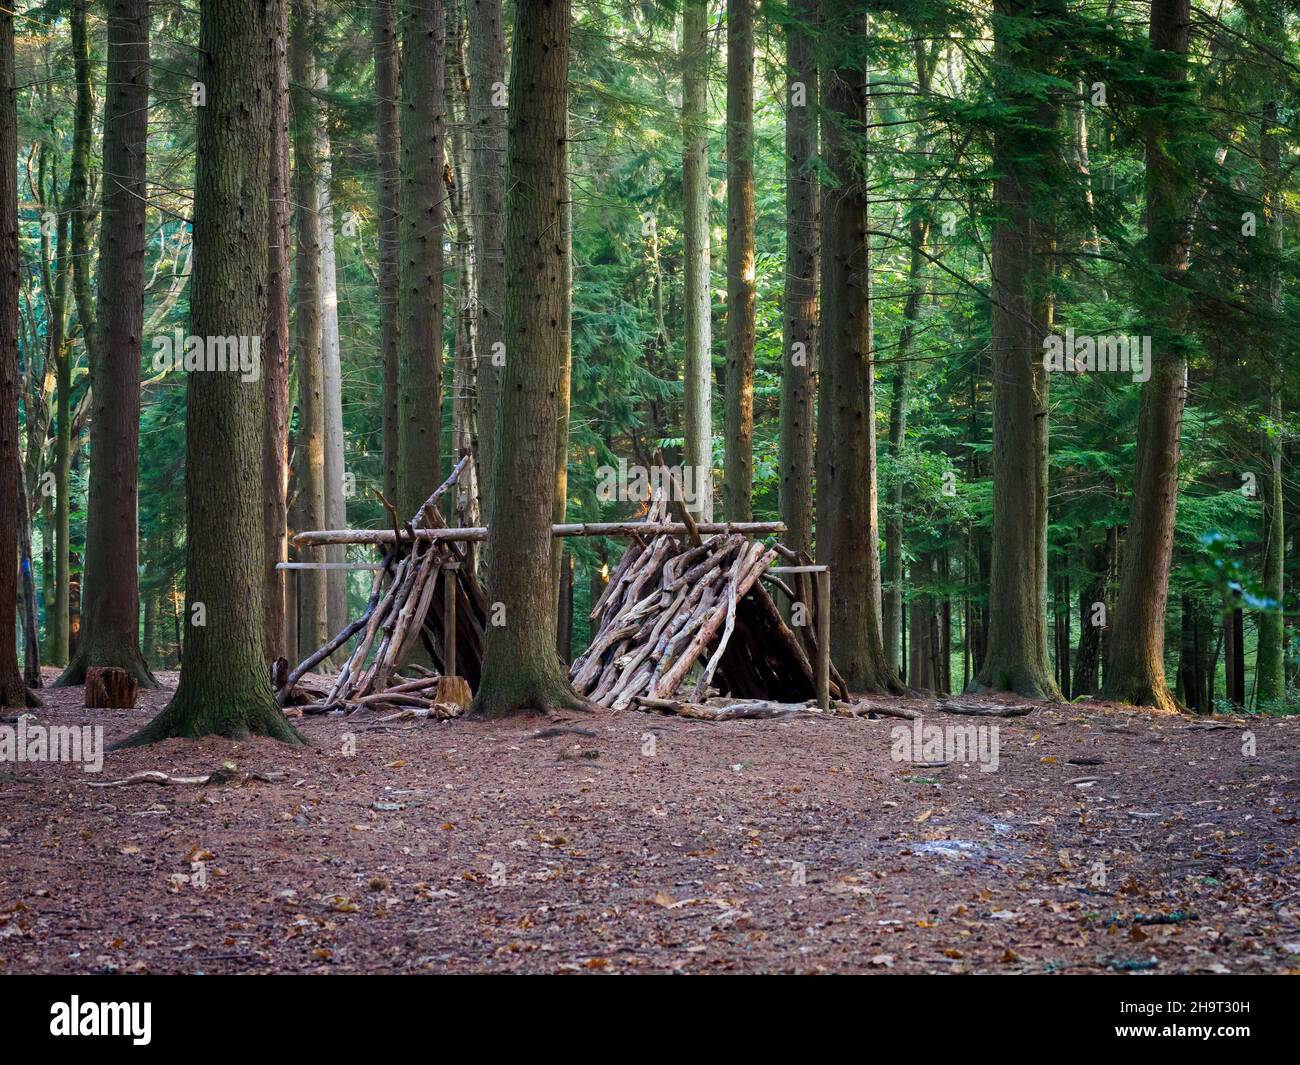 Bushcraft shelter in woodland, Forest of Bere, Fareham, Hampshire, UK Stock Photo